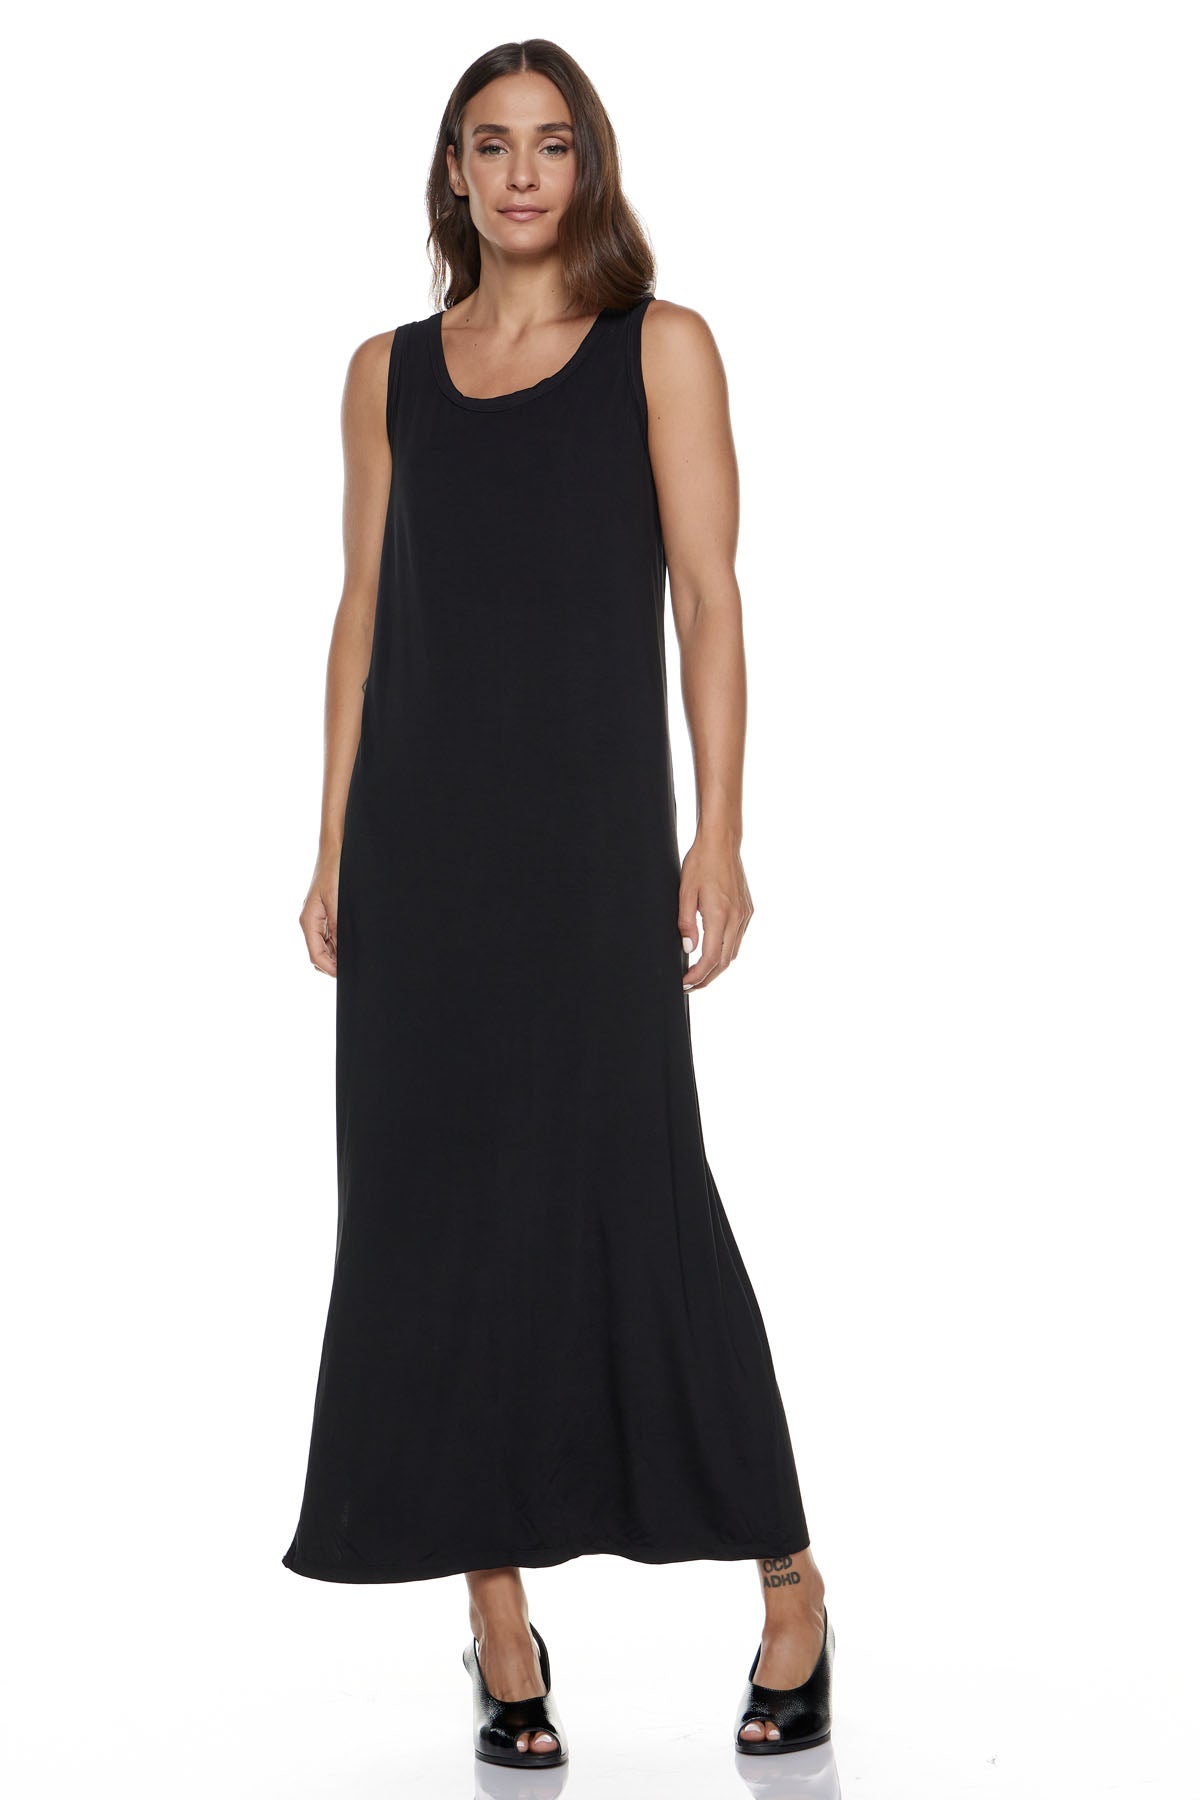 Chic & Simple Φόρεμα (Basics) Φατιόνα - Μαύρο